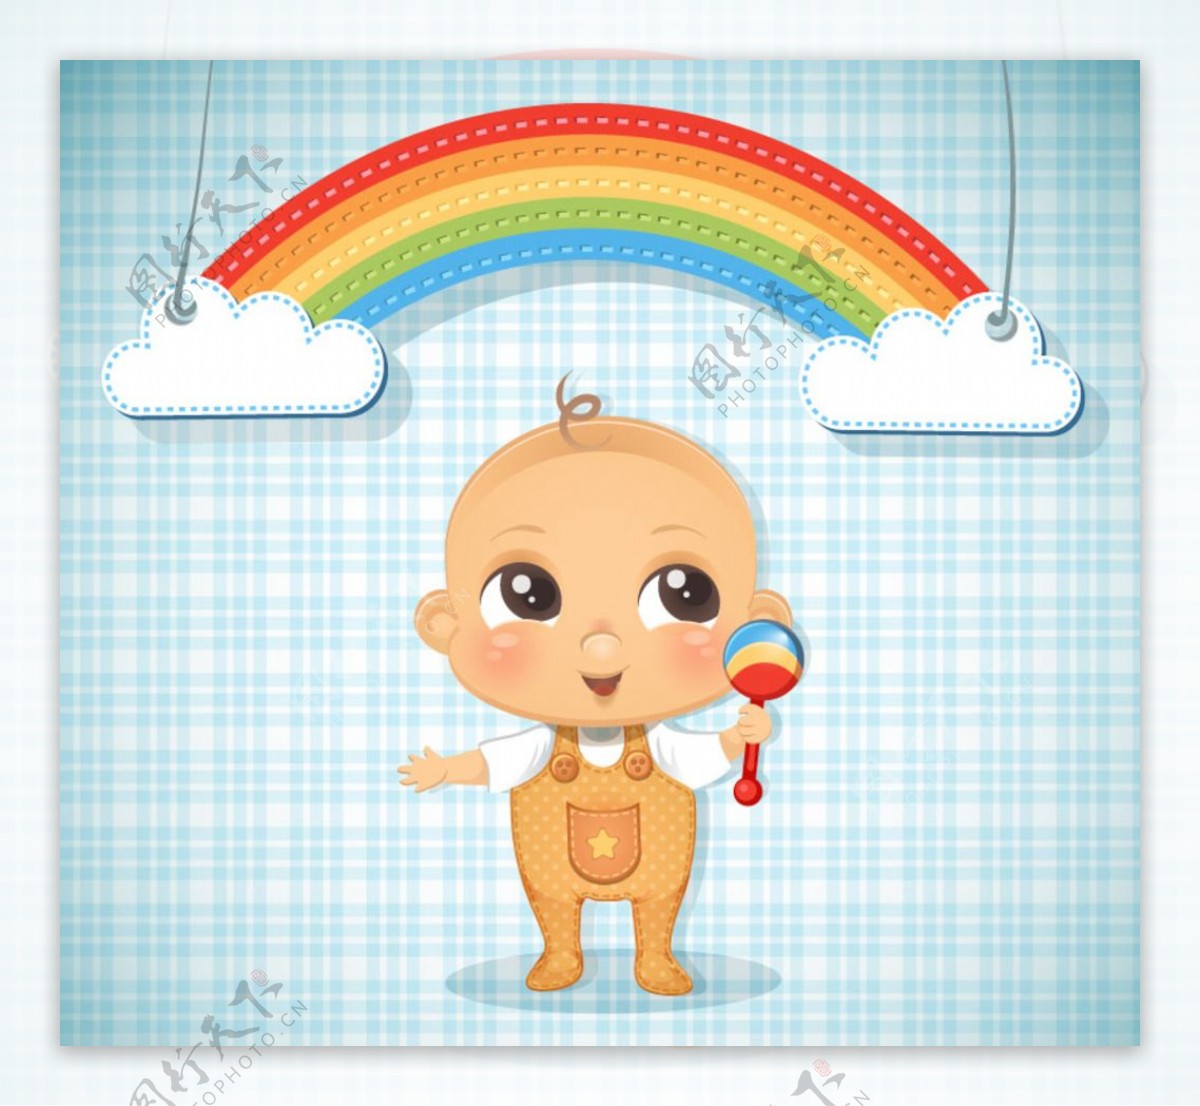 可爱婴儿和彩虹剪贴画矢量图